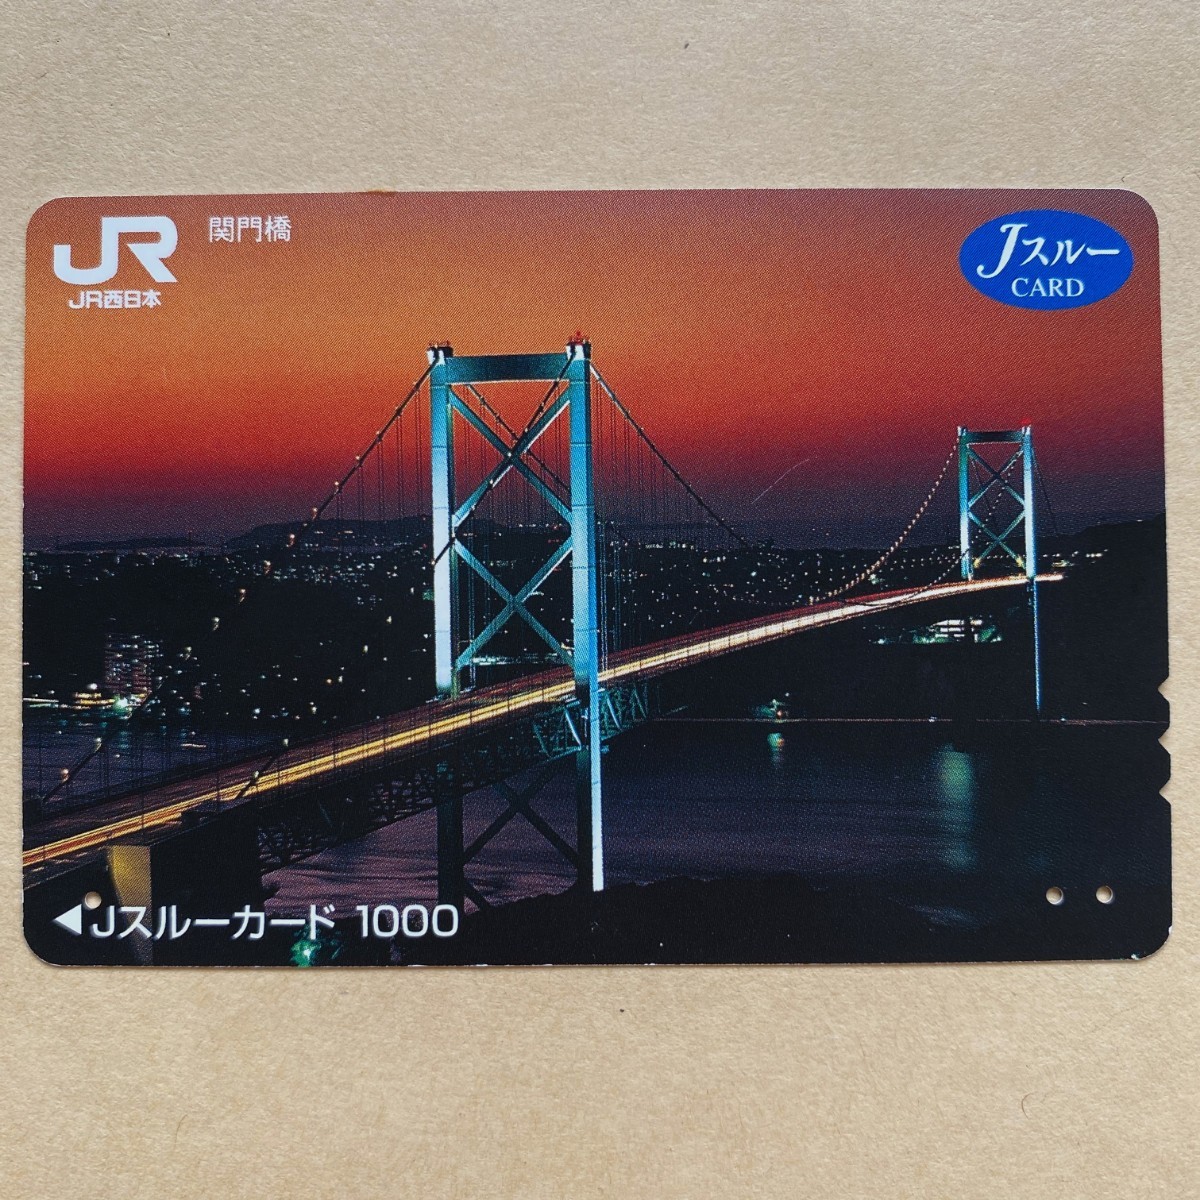 [ использованный ] Js Roo карта JR запад Япония ....